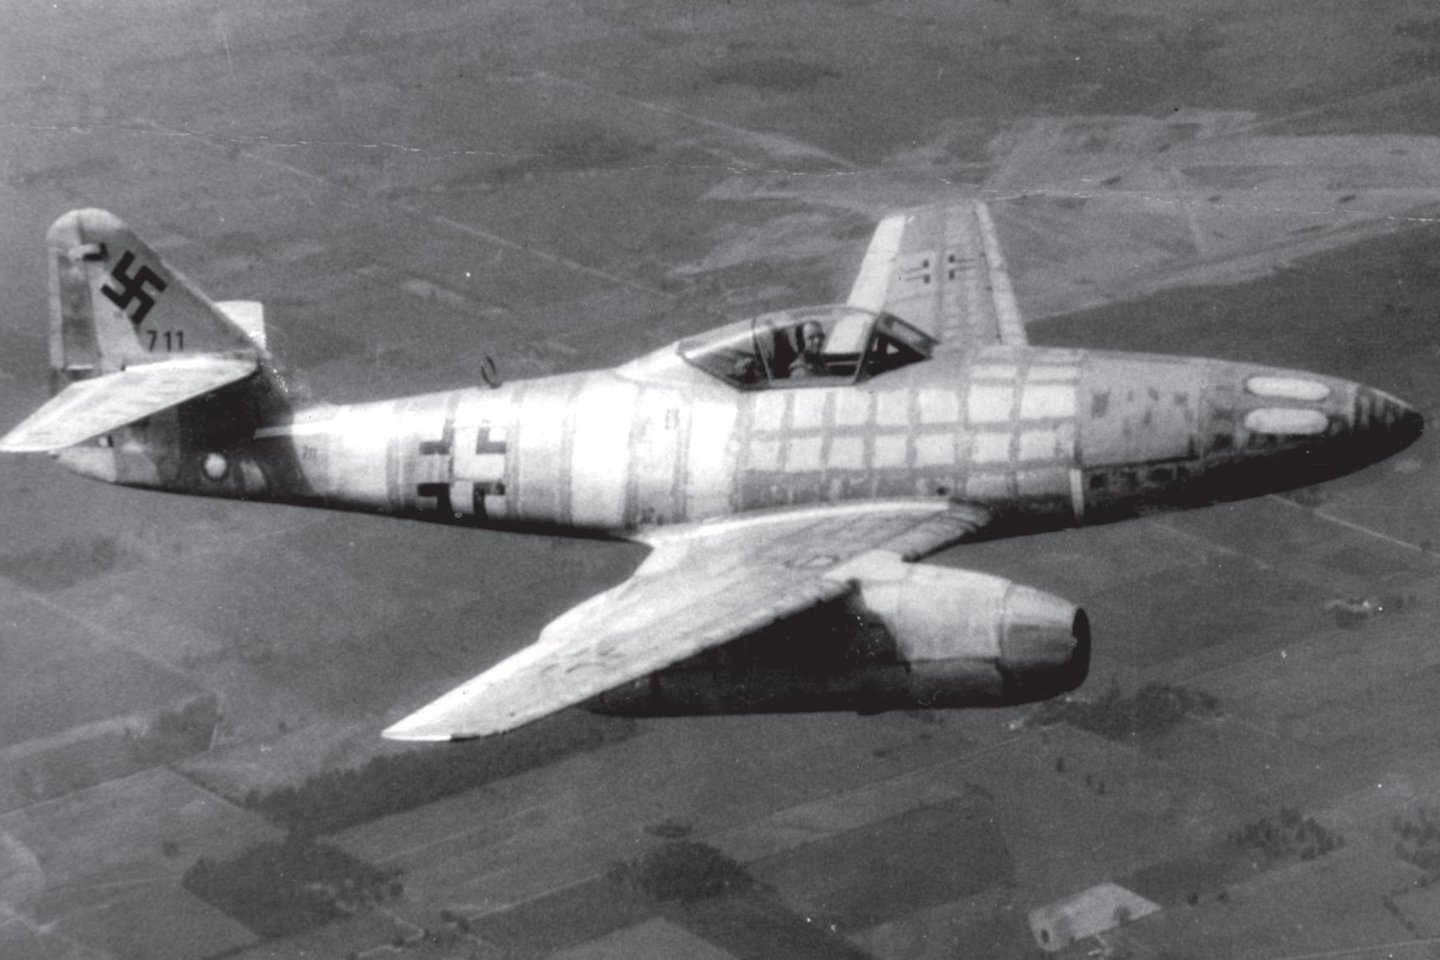  Pirmasis Me-262 pateko į sąjungininkų rankas, kai 1945 m. kovo 31 d. pasidavė jį pilotuojantis vokiečių lakūnas bandytojas.<br> Leidėjų nuotr.